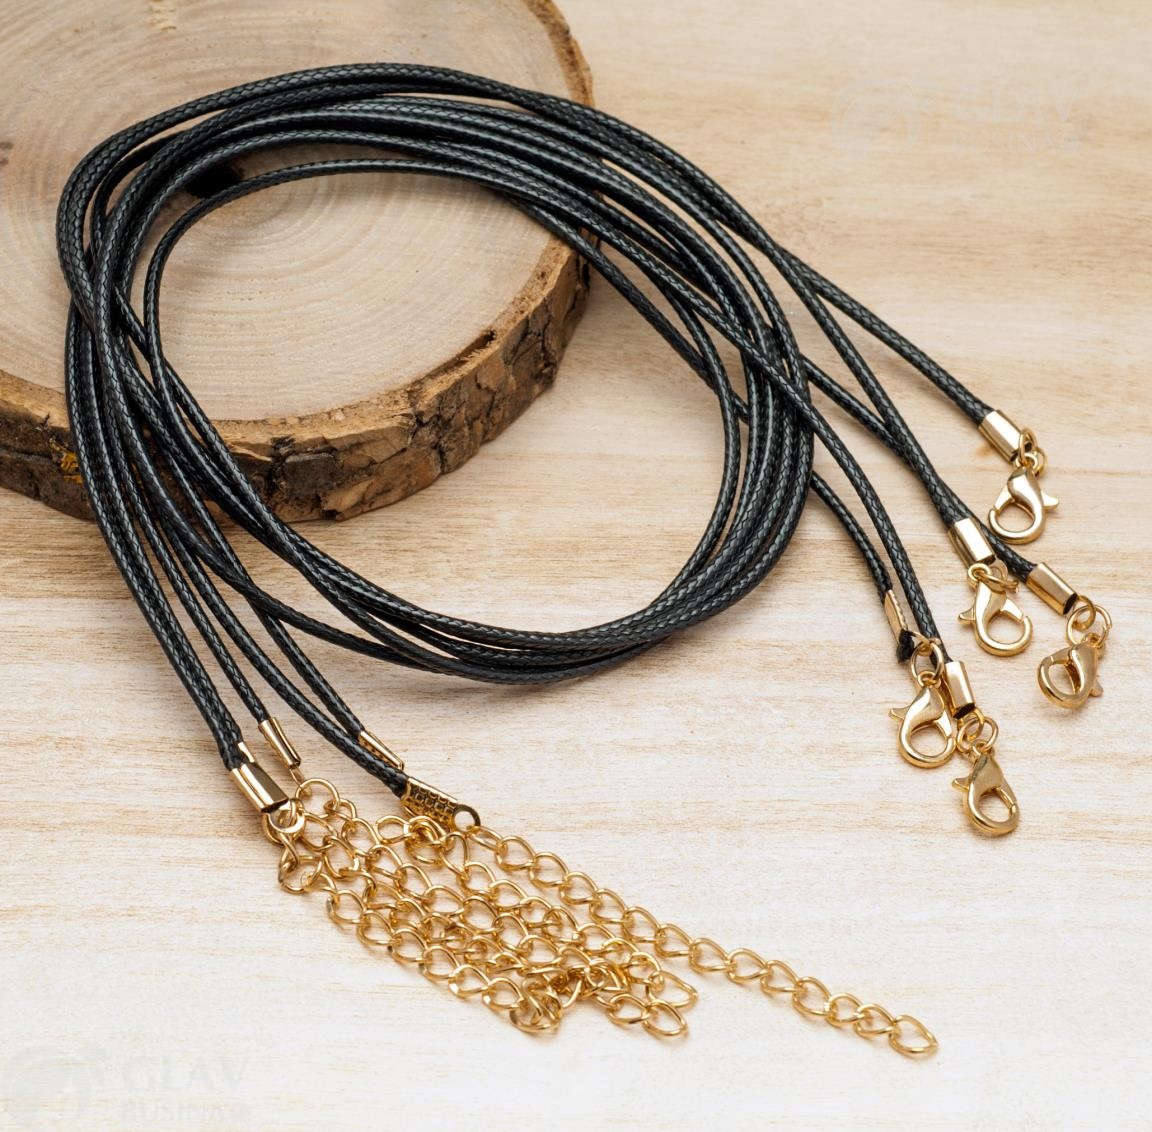 Черный полиэстровый вощеный кулонный шнур 45см, золотая фурнитура, имитация змеиной кожи, блестящий, высококачественный материал.